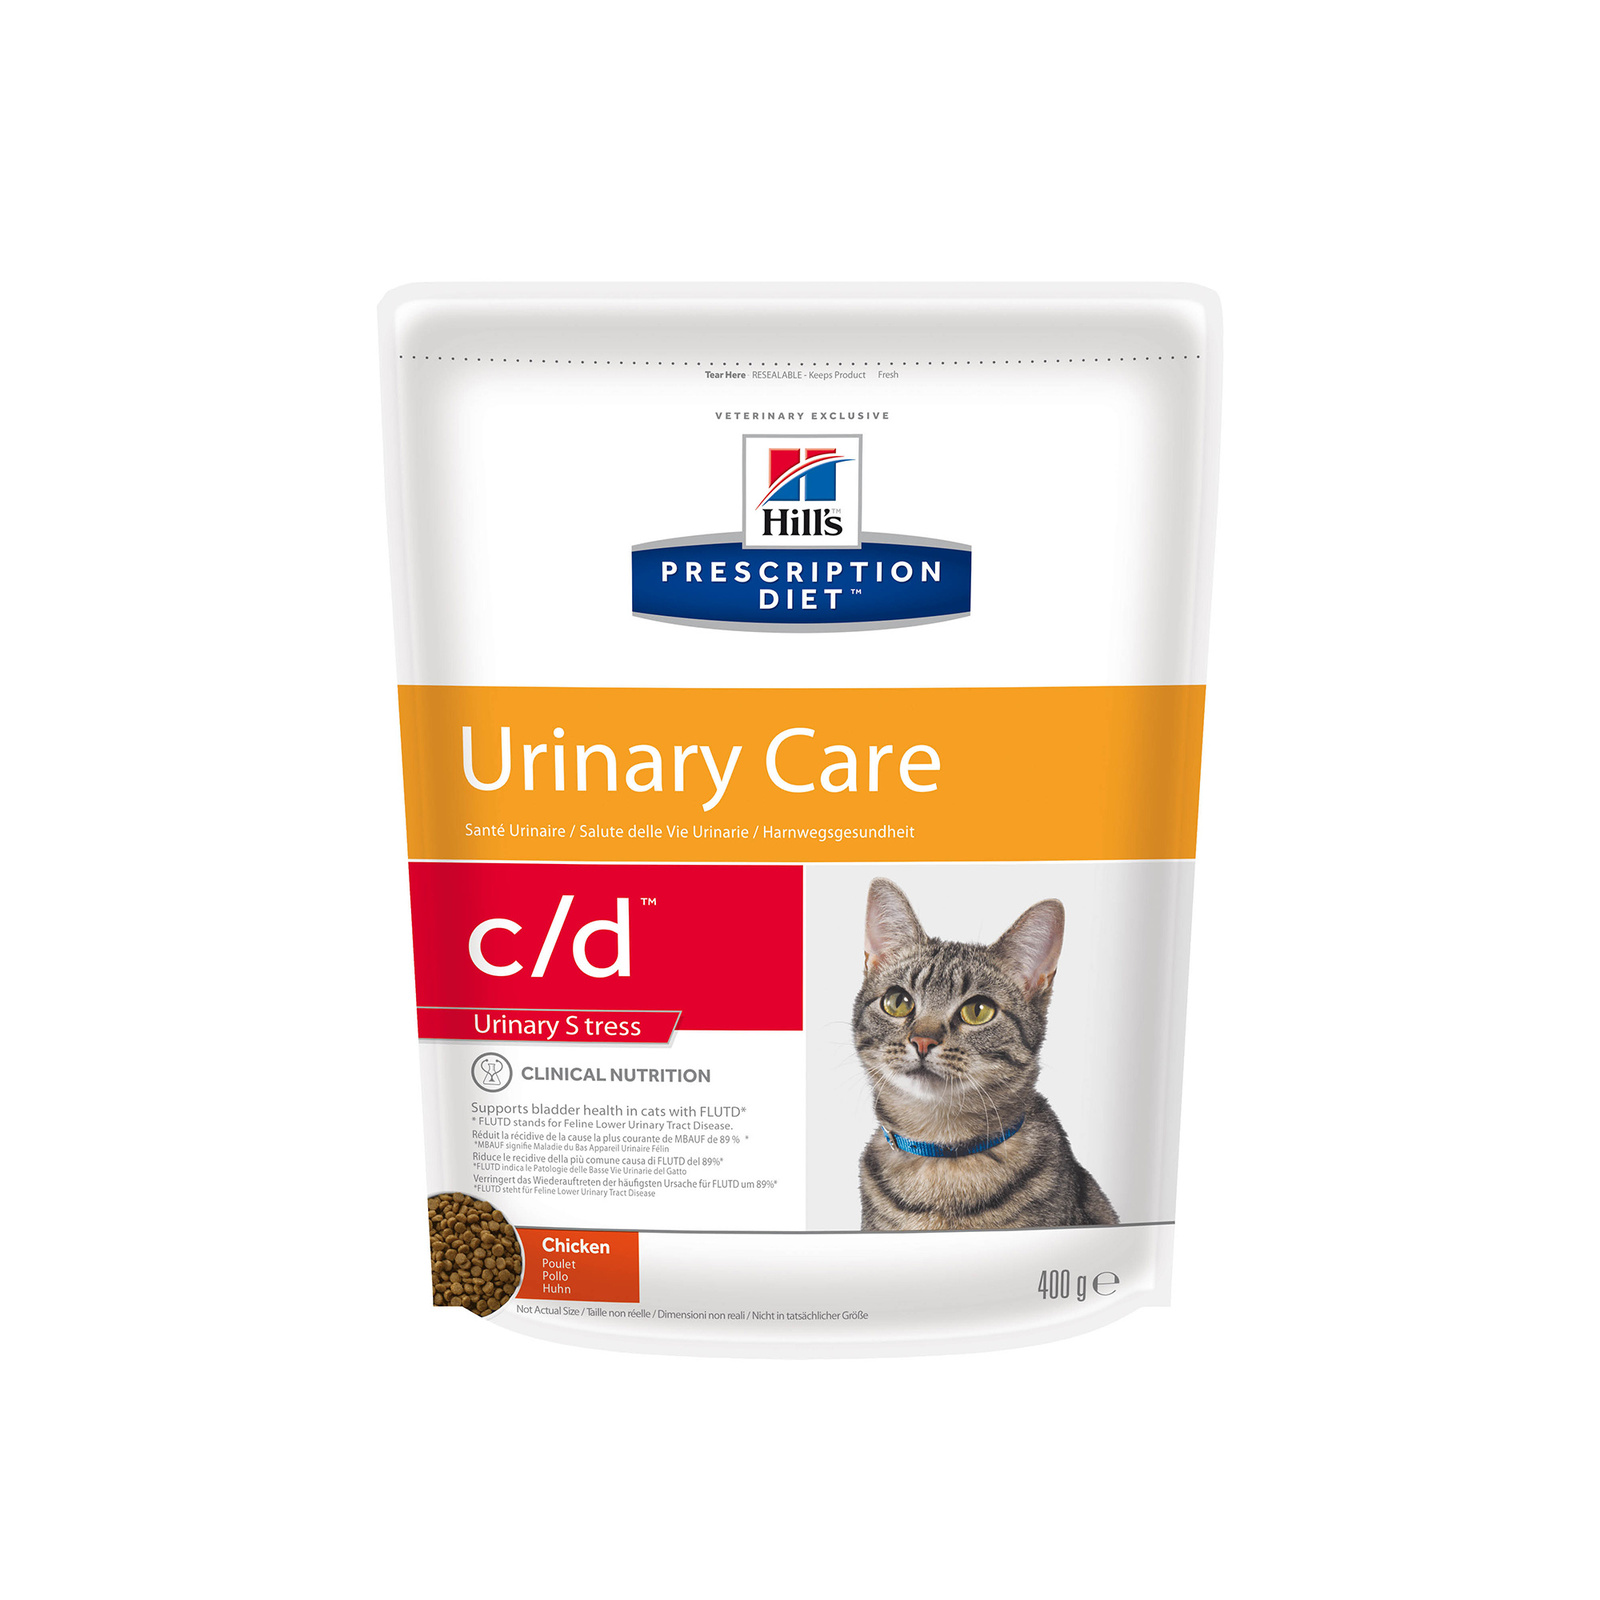 c/d Multicare Urinary Stress сухой диетический, для кошек при профилактике цистита и мочекаменной болезни (МКБ), в том числе вызванной стрессом, с курицей (1,5 кг)